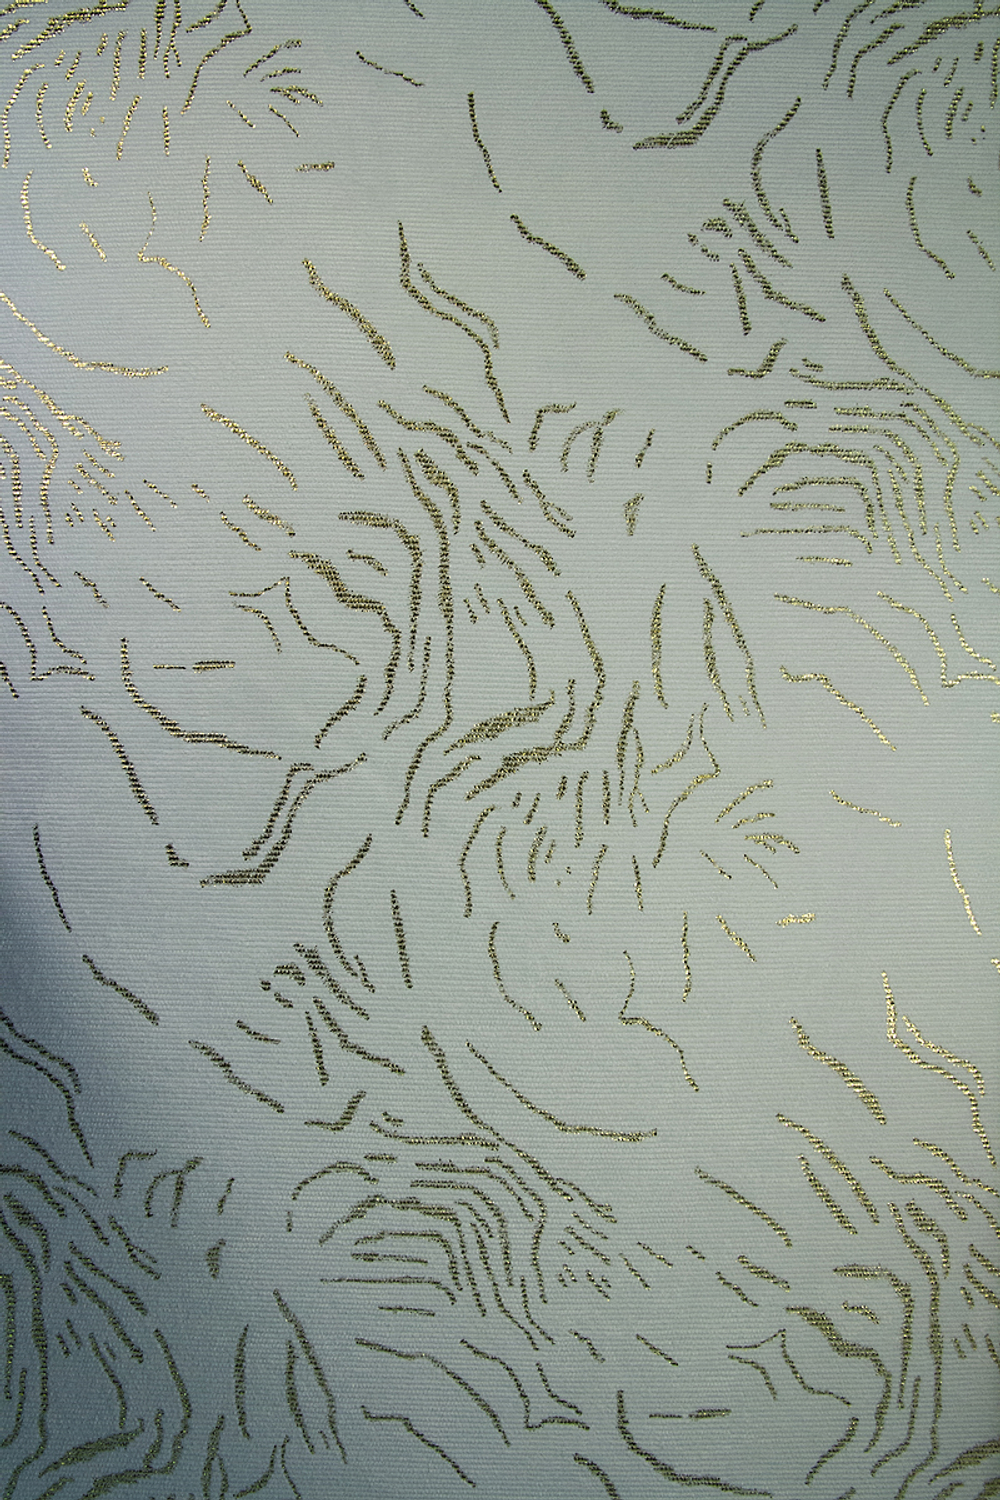 Ткань Вельвет белый с золотым тиснением арт. 104046